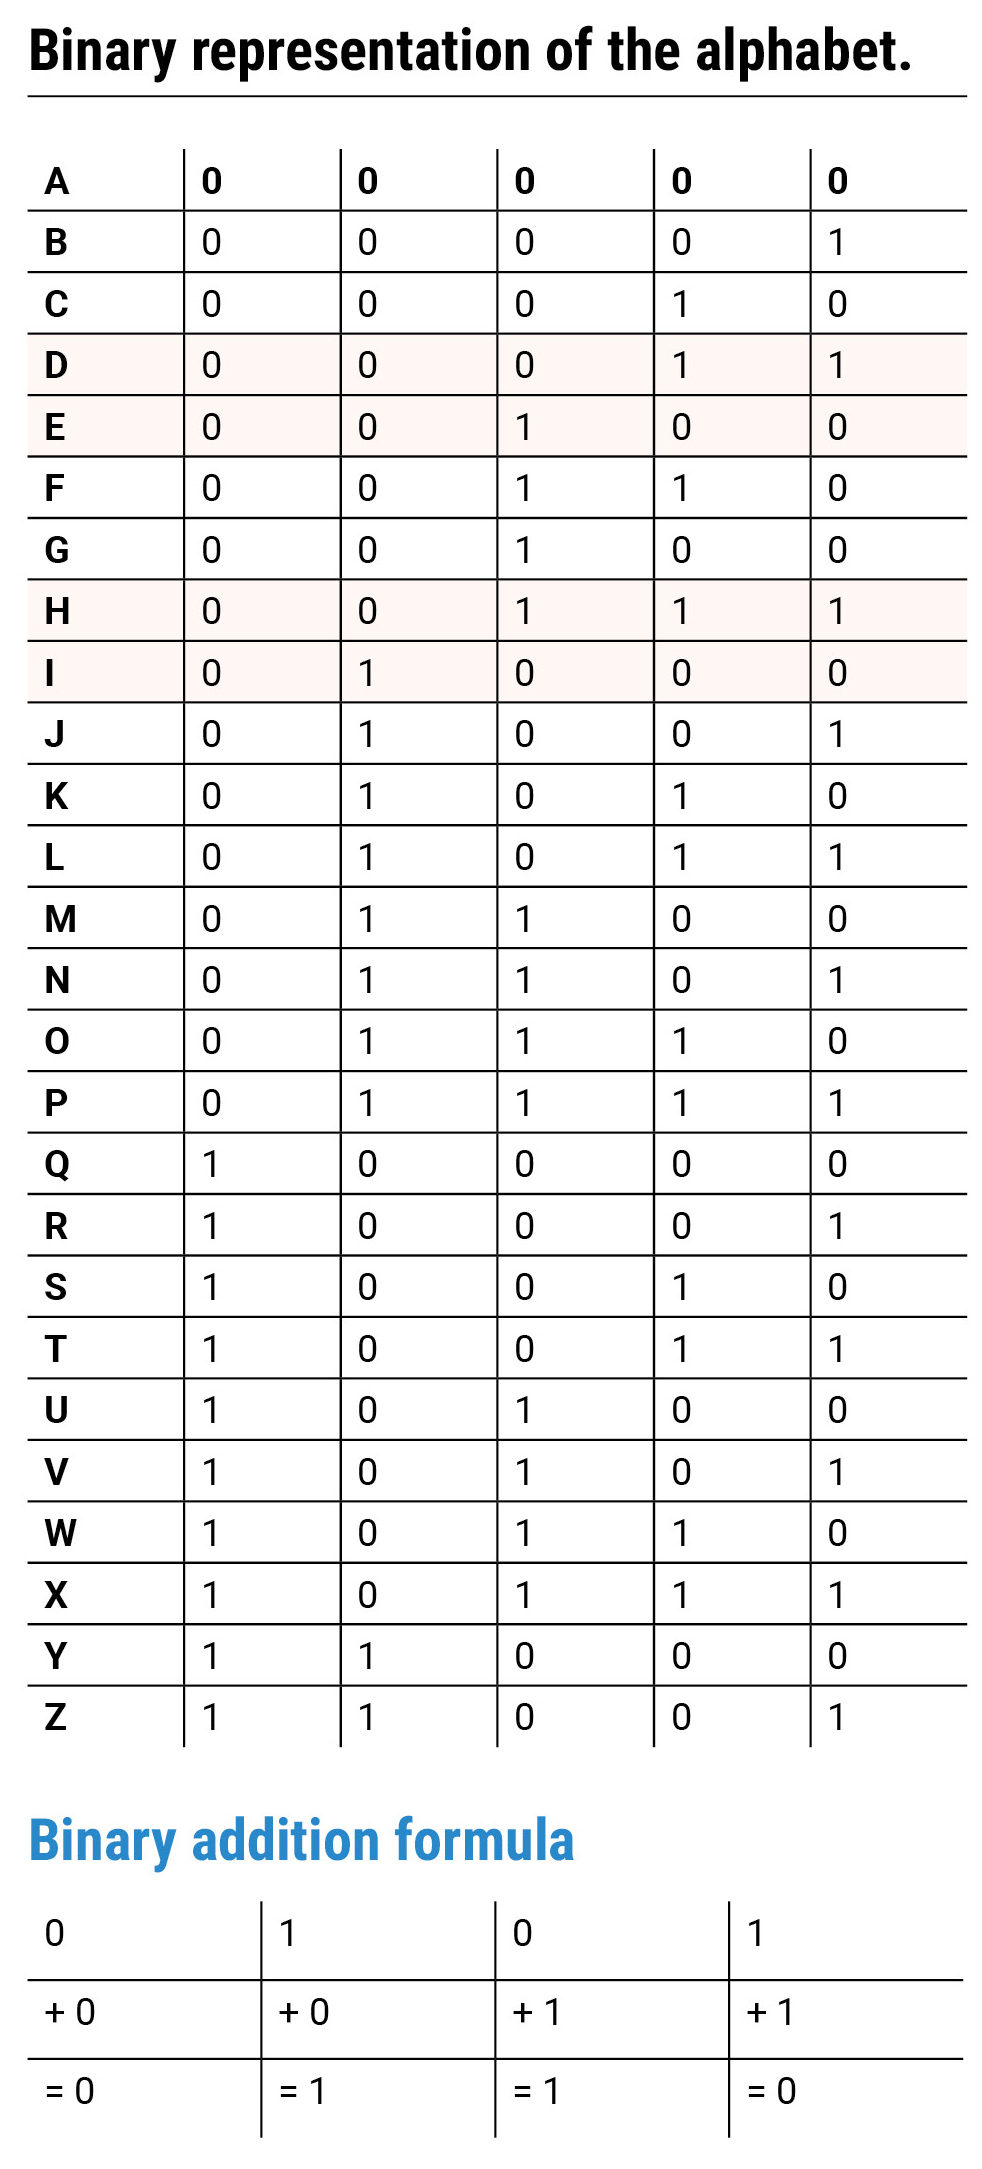 Binary representation of the alphabet.